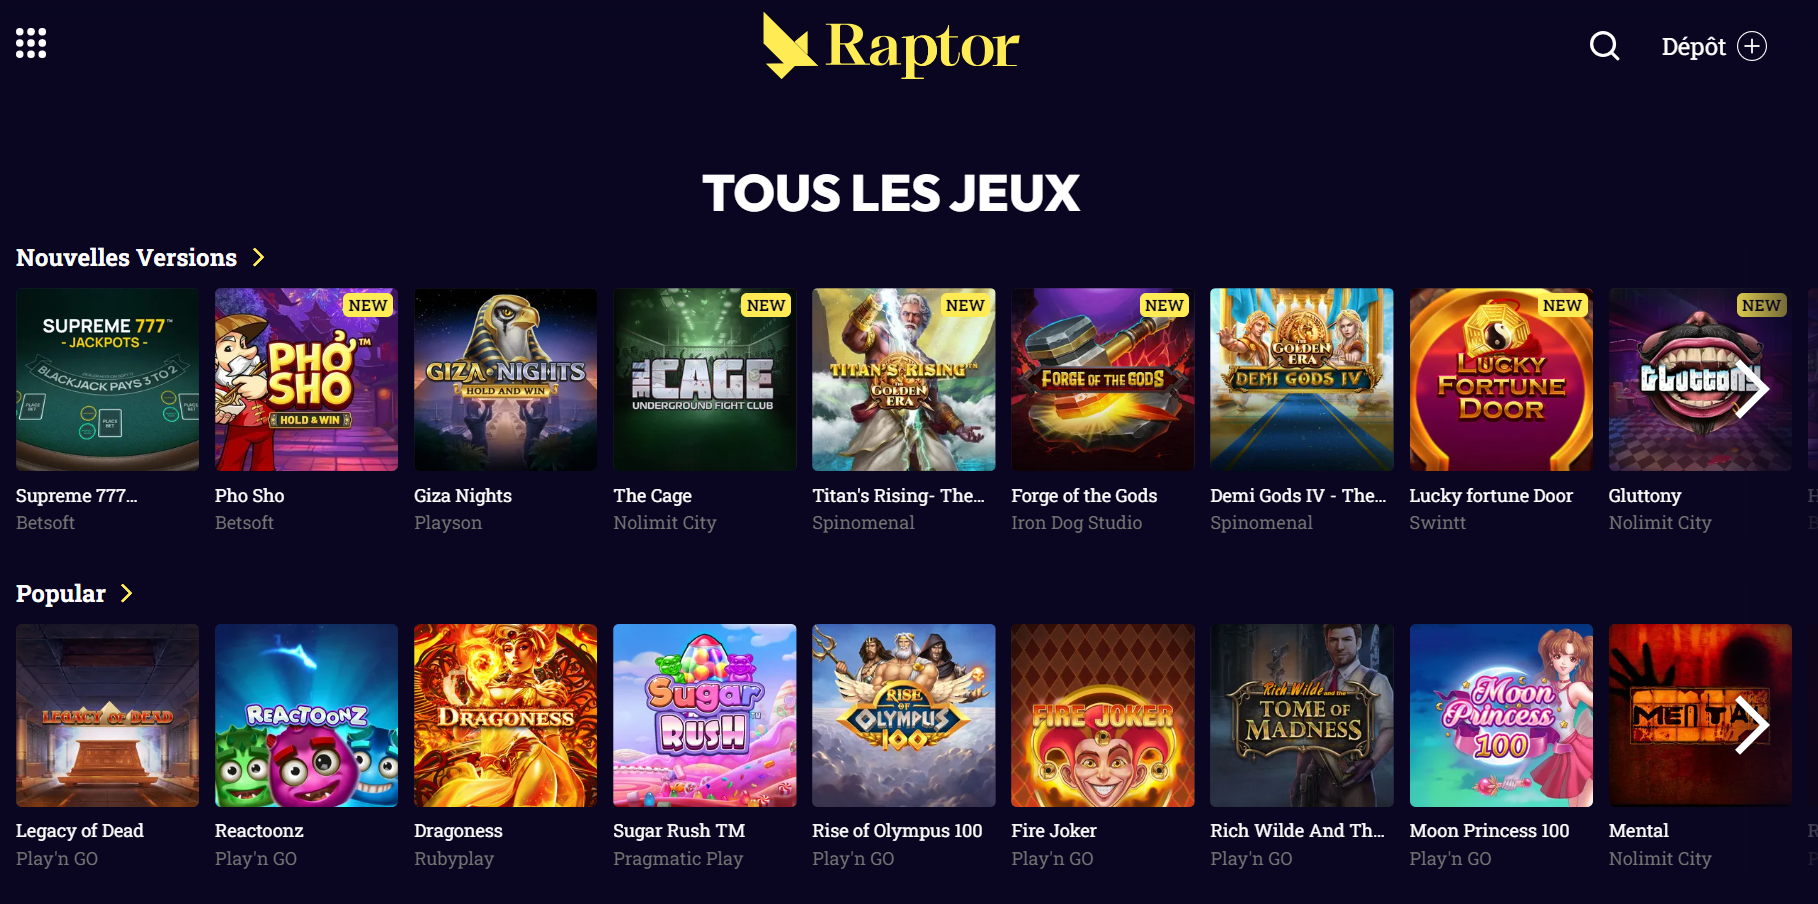 raptor homepage